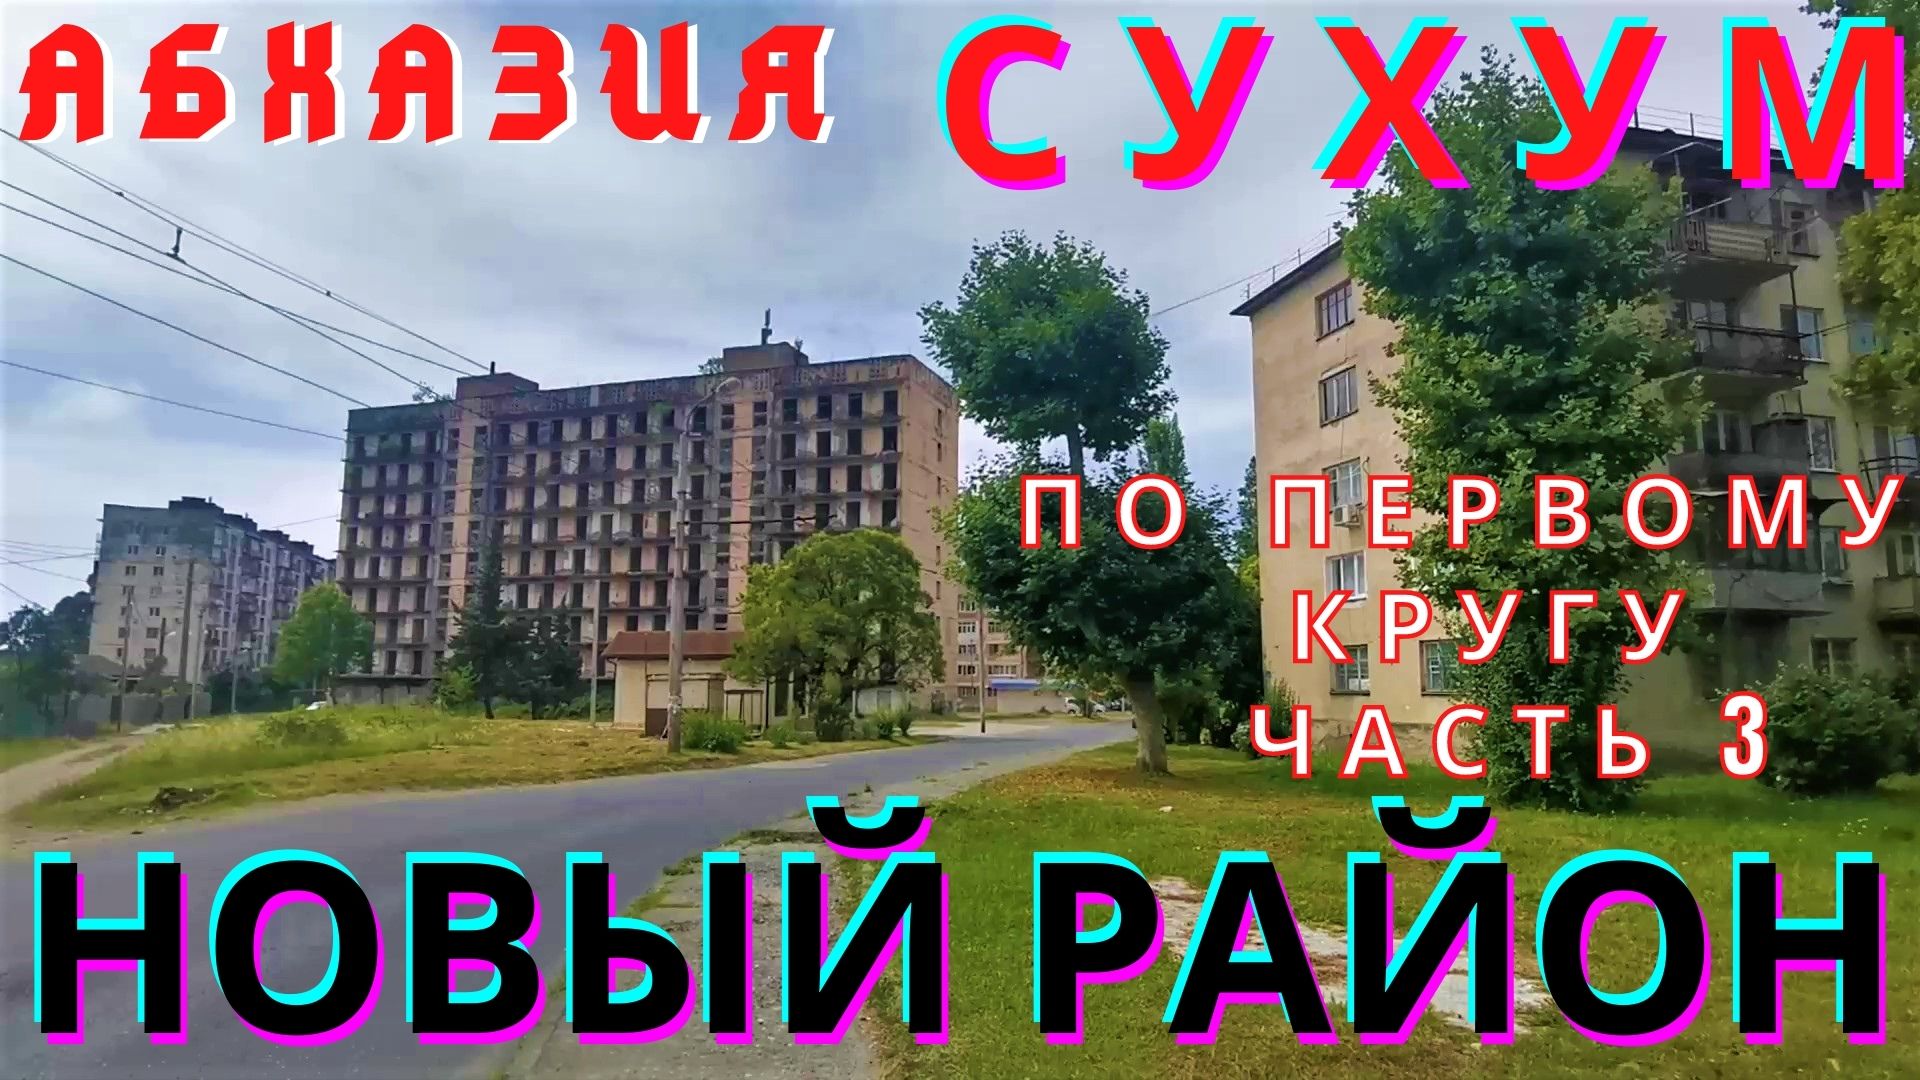 Абхазия 2021  Сухум  Новый район по первому кругу часть 3